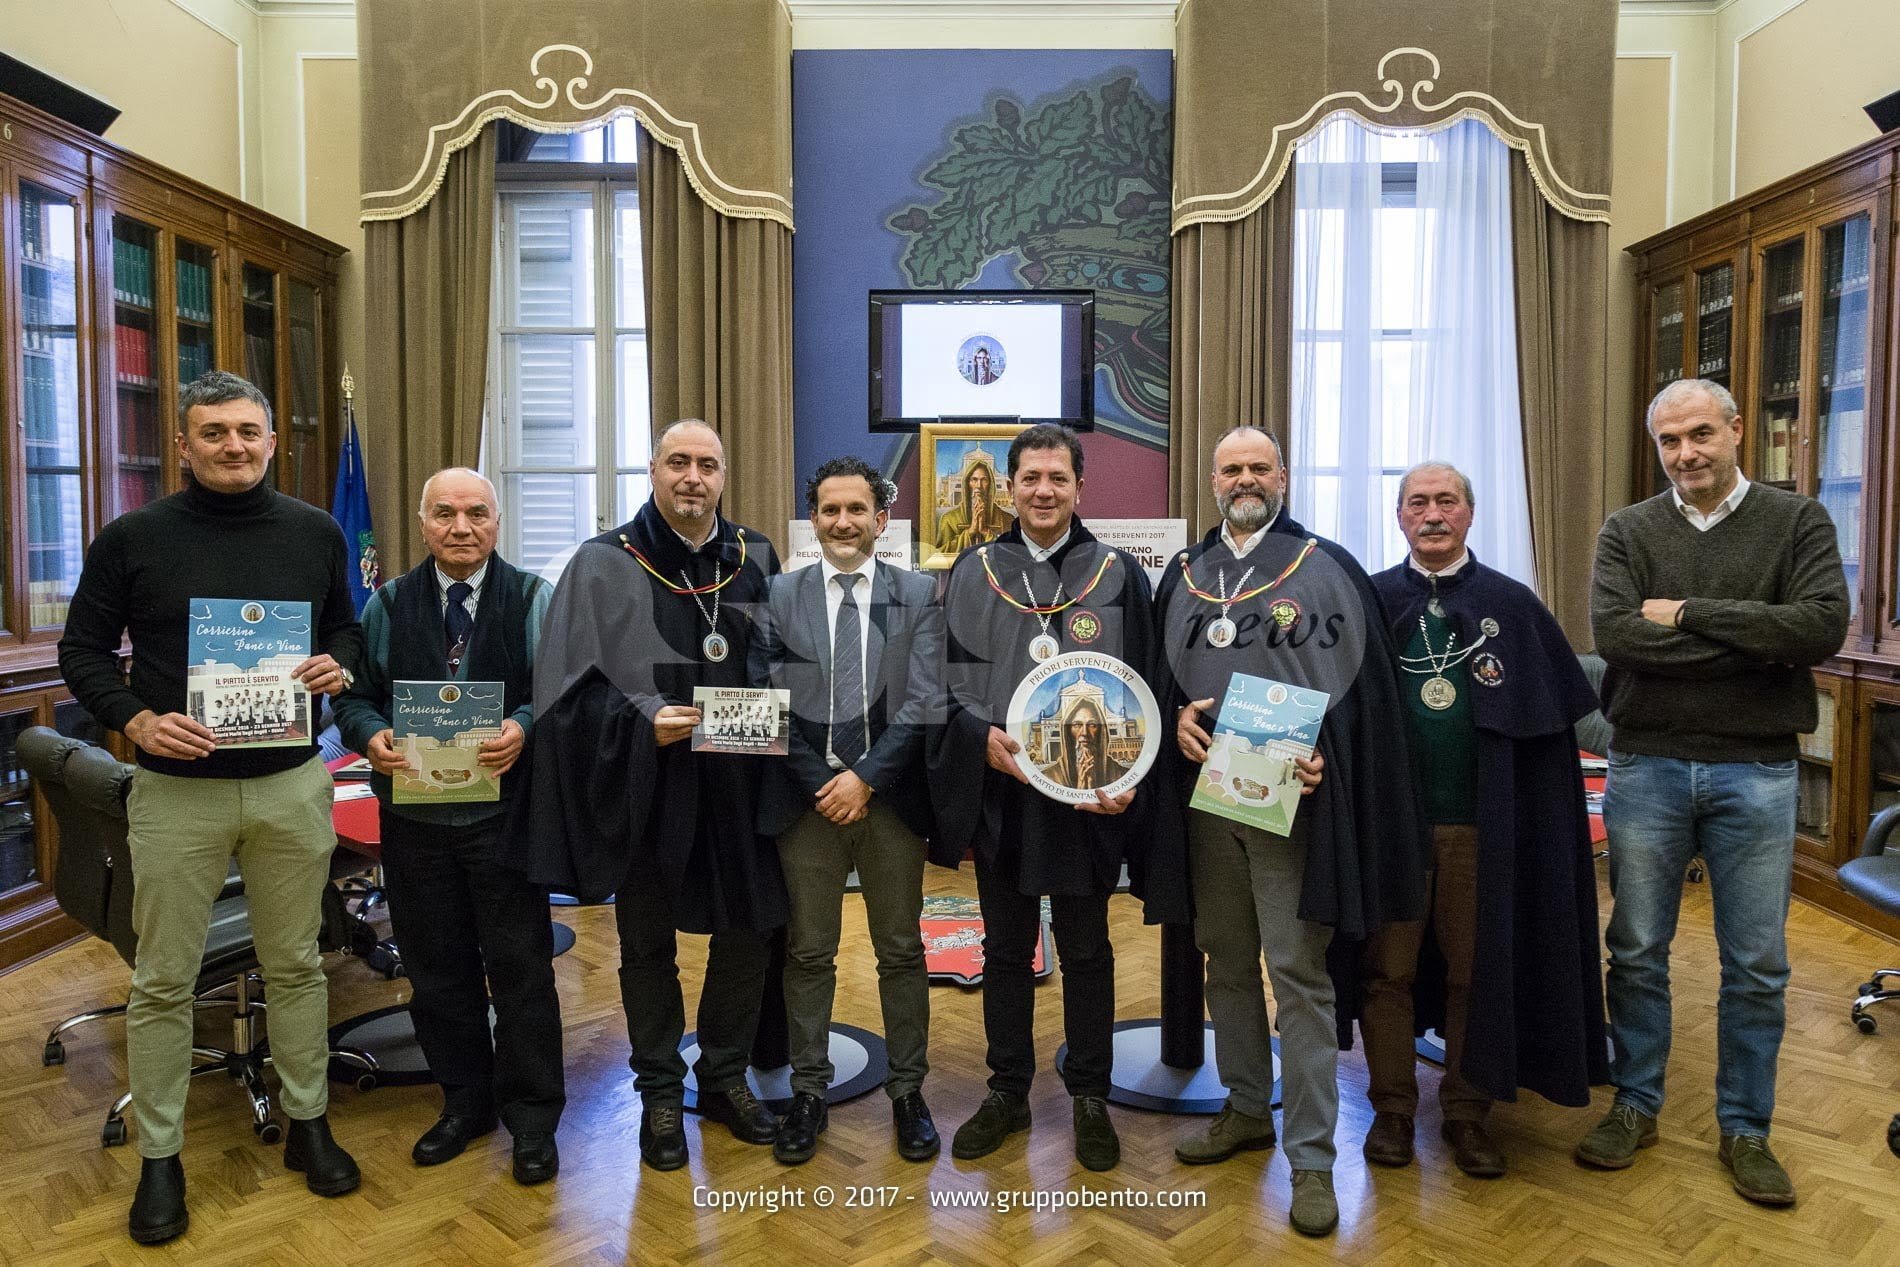 Festa Sant'Antonio 2017 presentata a Perugia: eventi in programma